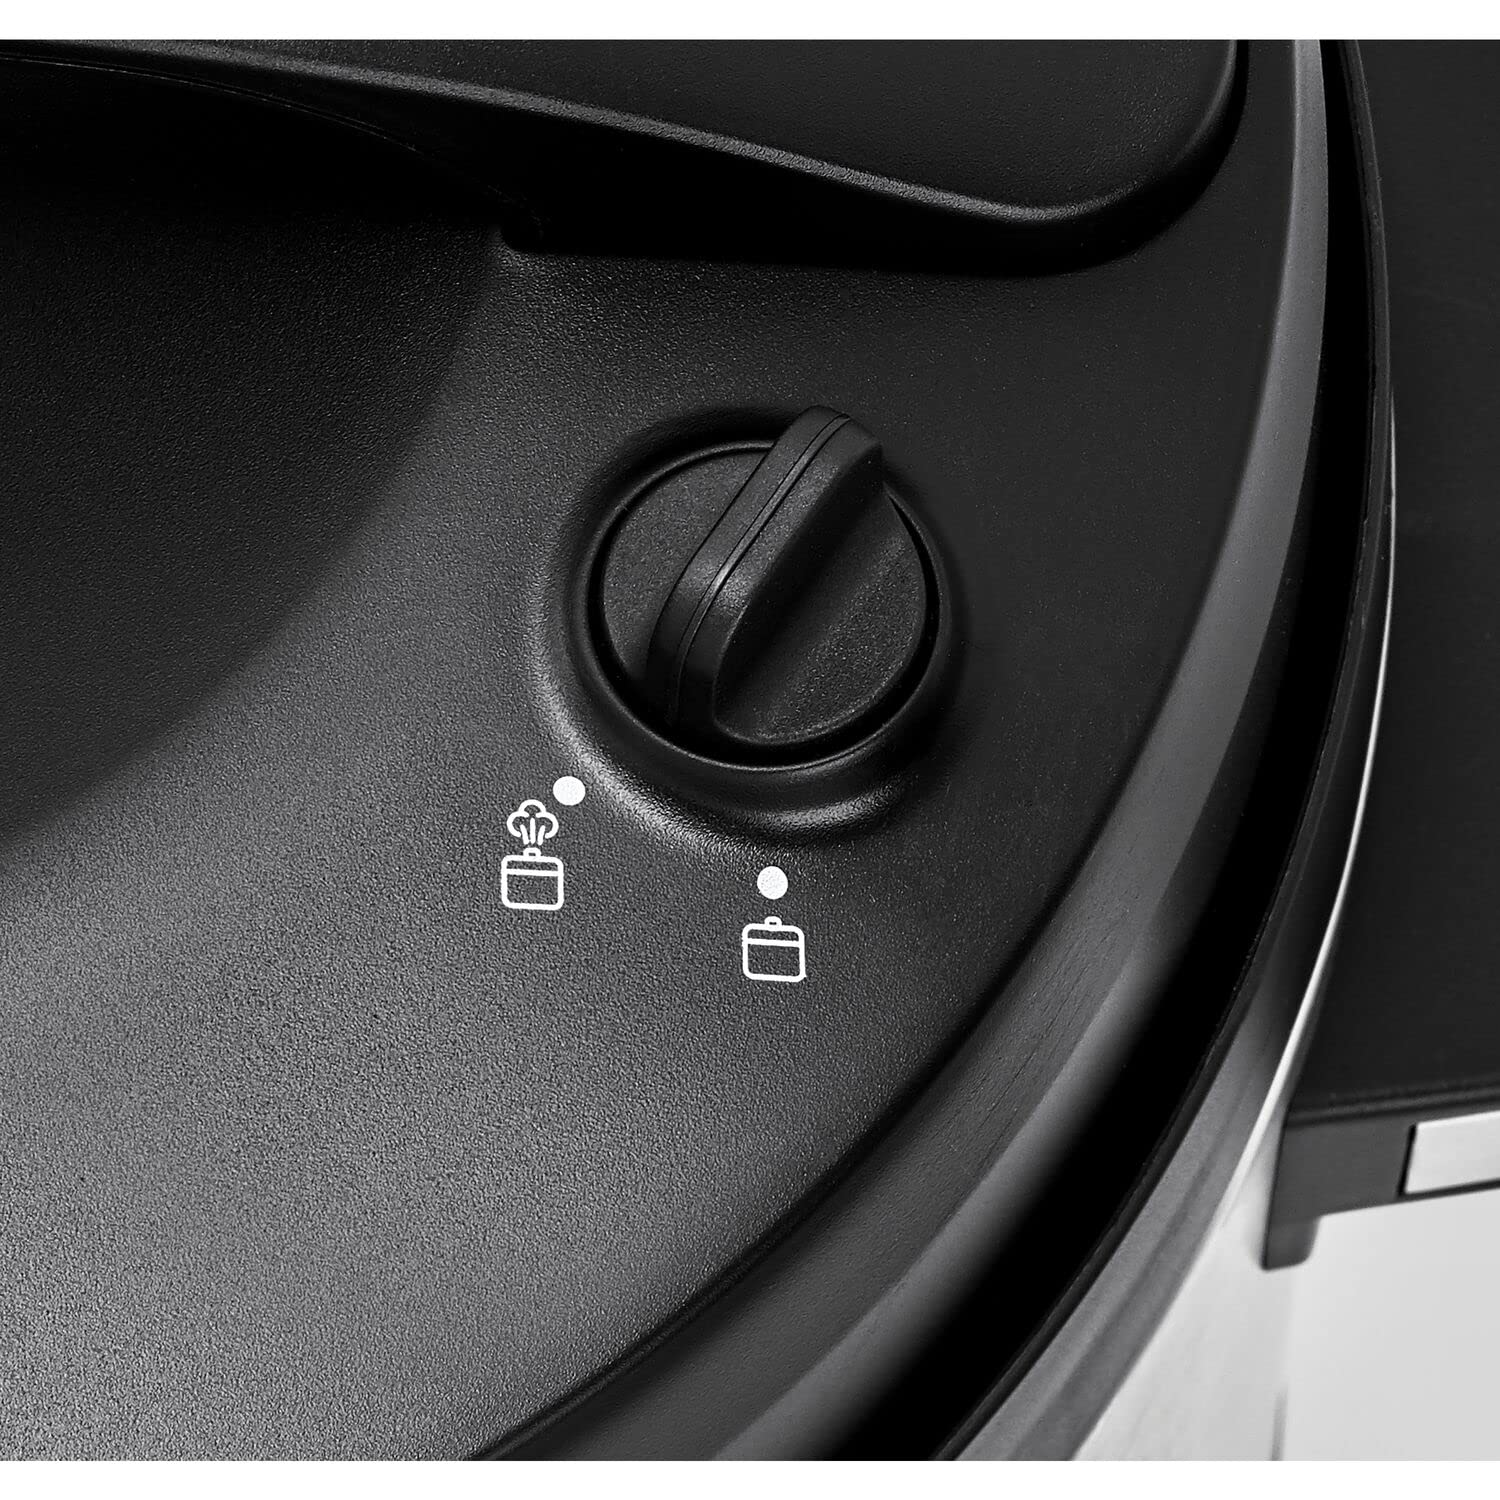 Black & Decker Smart Steam Pot, 1350W Power, 10L, 9 in 1 Usage, 14 Smart Programmable Electric Pressure Cooker وعاء بخار بتصميم انيق من بلاك + ديكر، بقدرة 1350 واط وسعة 10 لتر، طنجرة ضغط كهربائية أنيقة قابلة للبرمجة